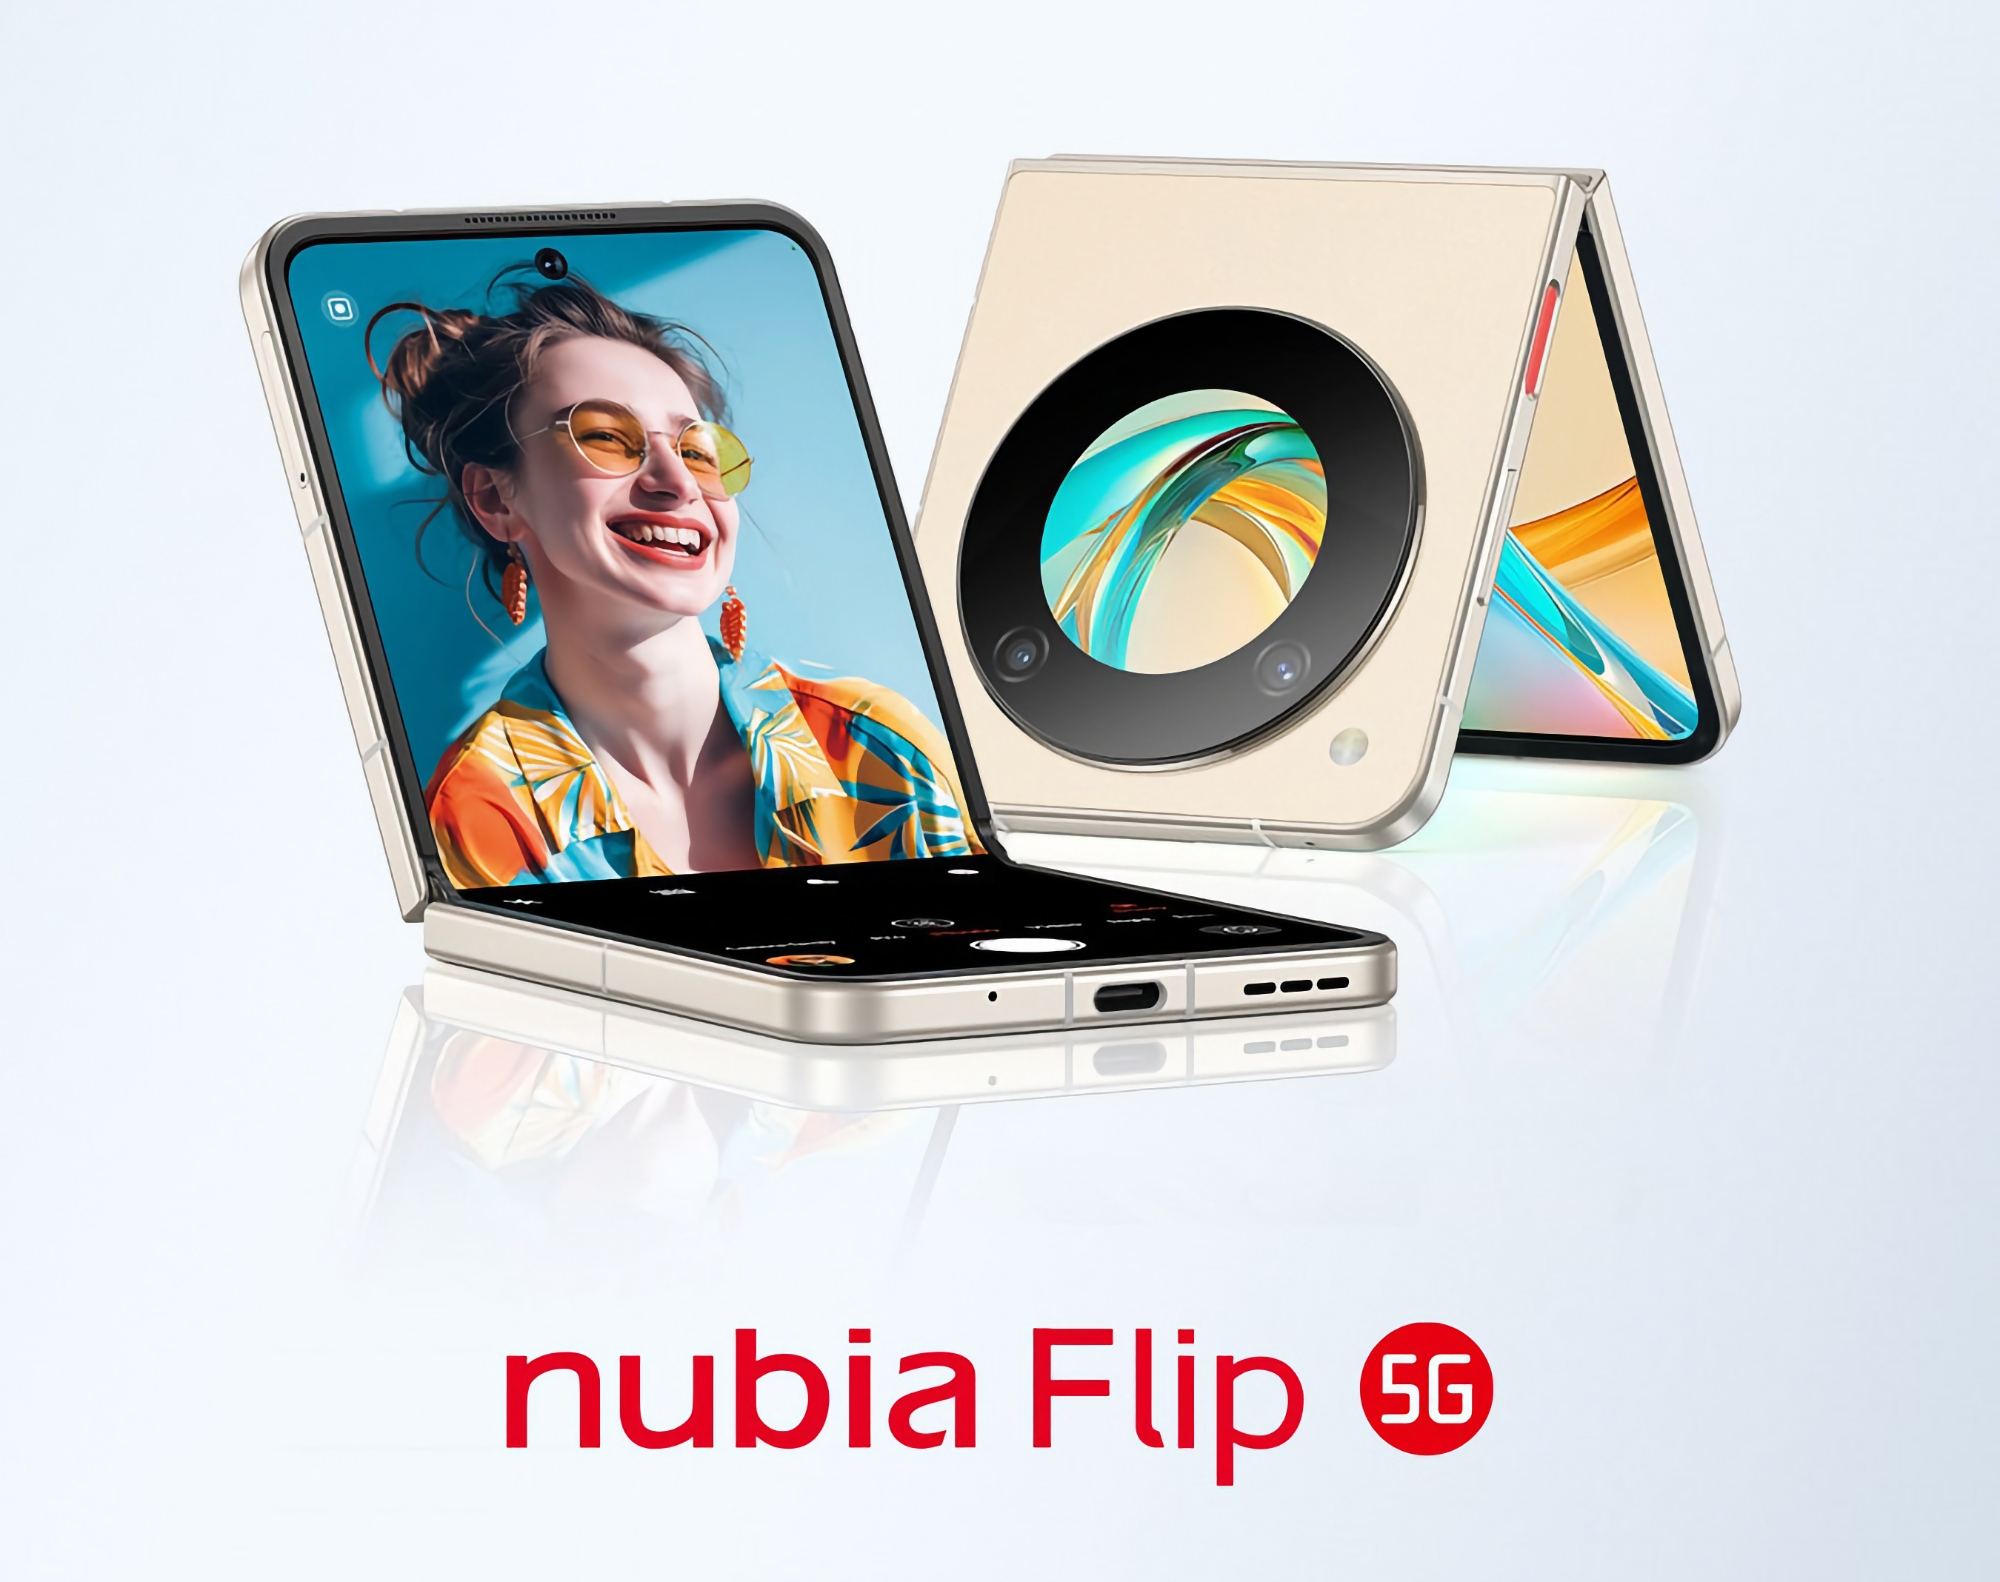 Ab 499 Dollar: Das faltbare Smartphone Nubia Flip 5G mit Snapdragon 7 Gen 1 Chip und zwei Bildschirmen hat sein globales Debüt gegeben